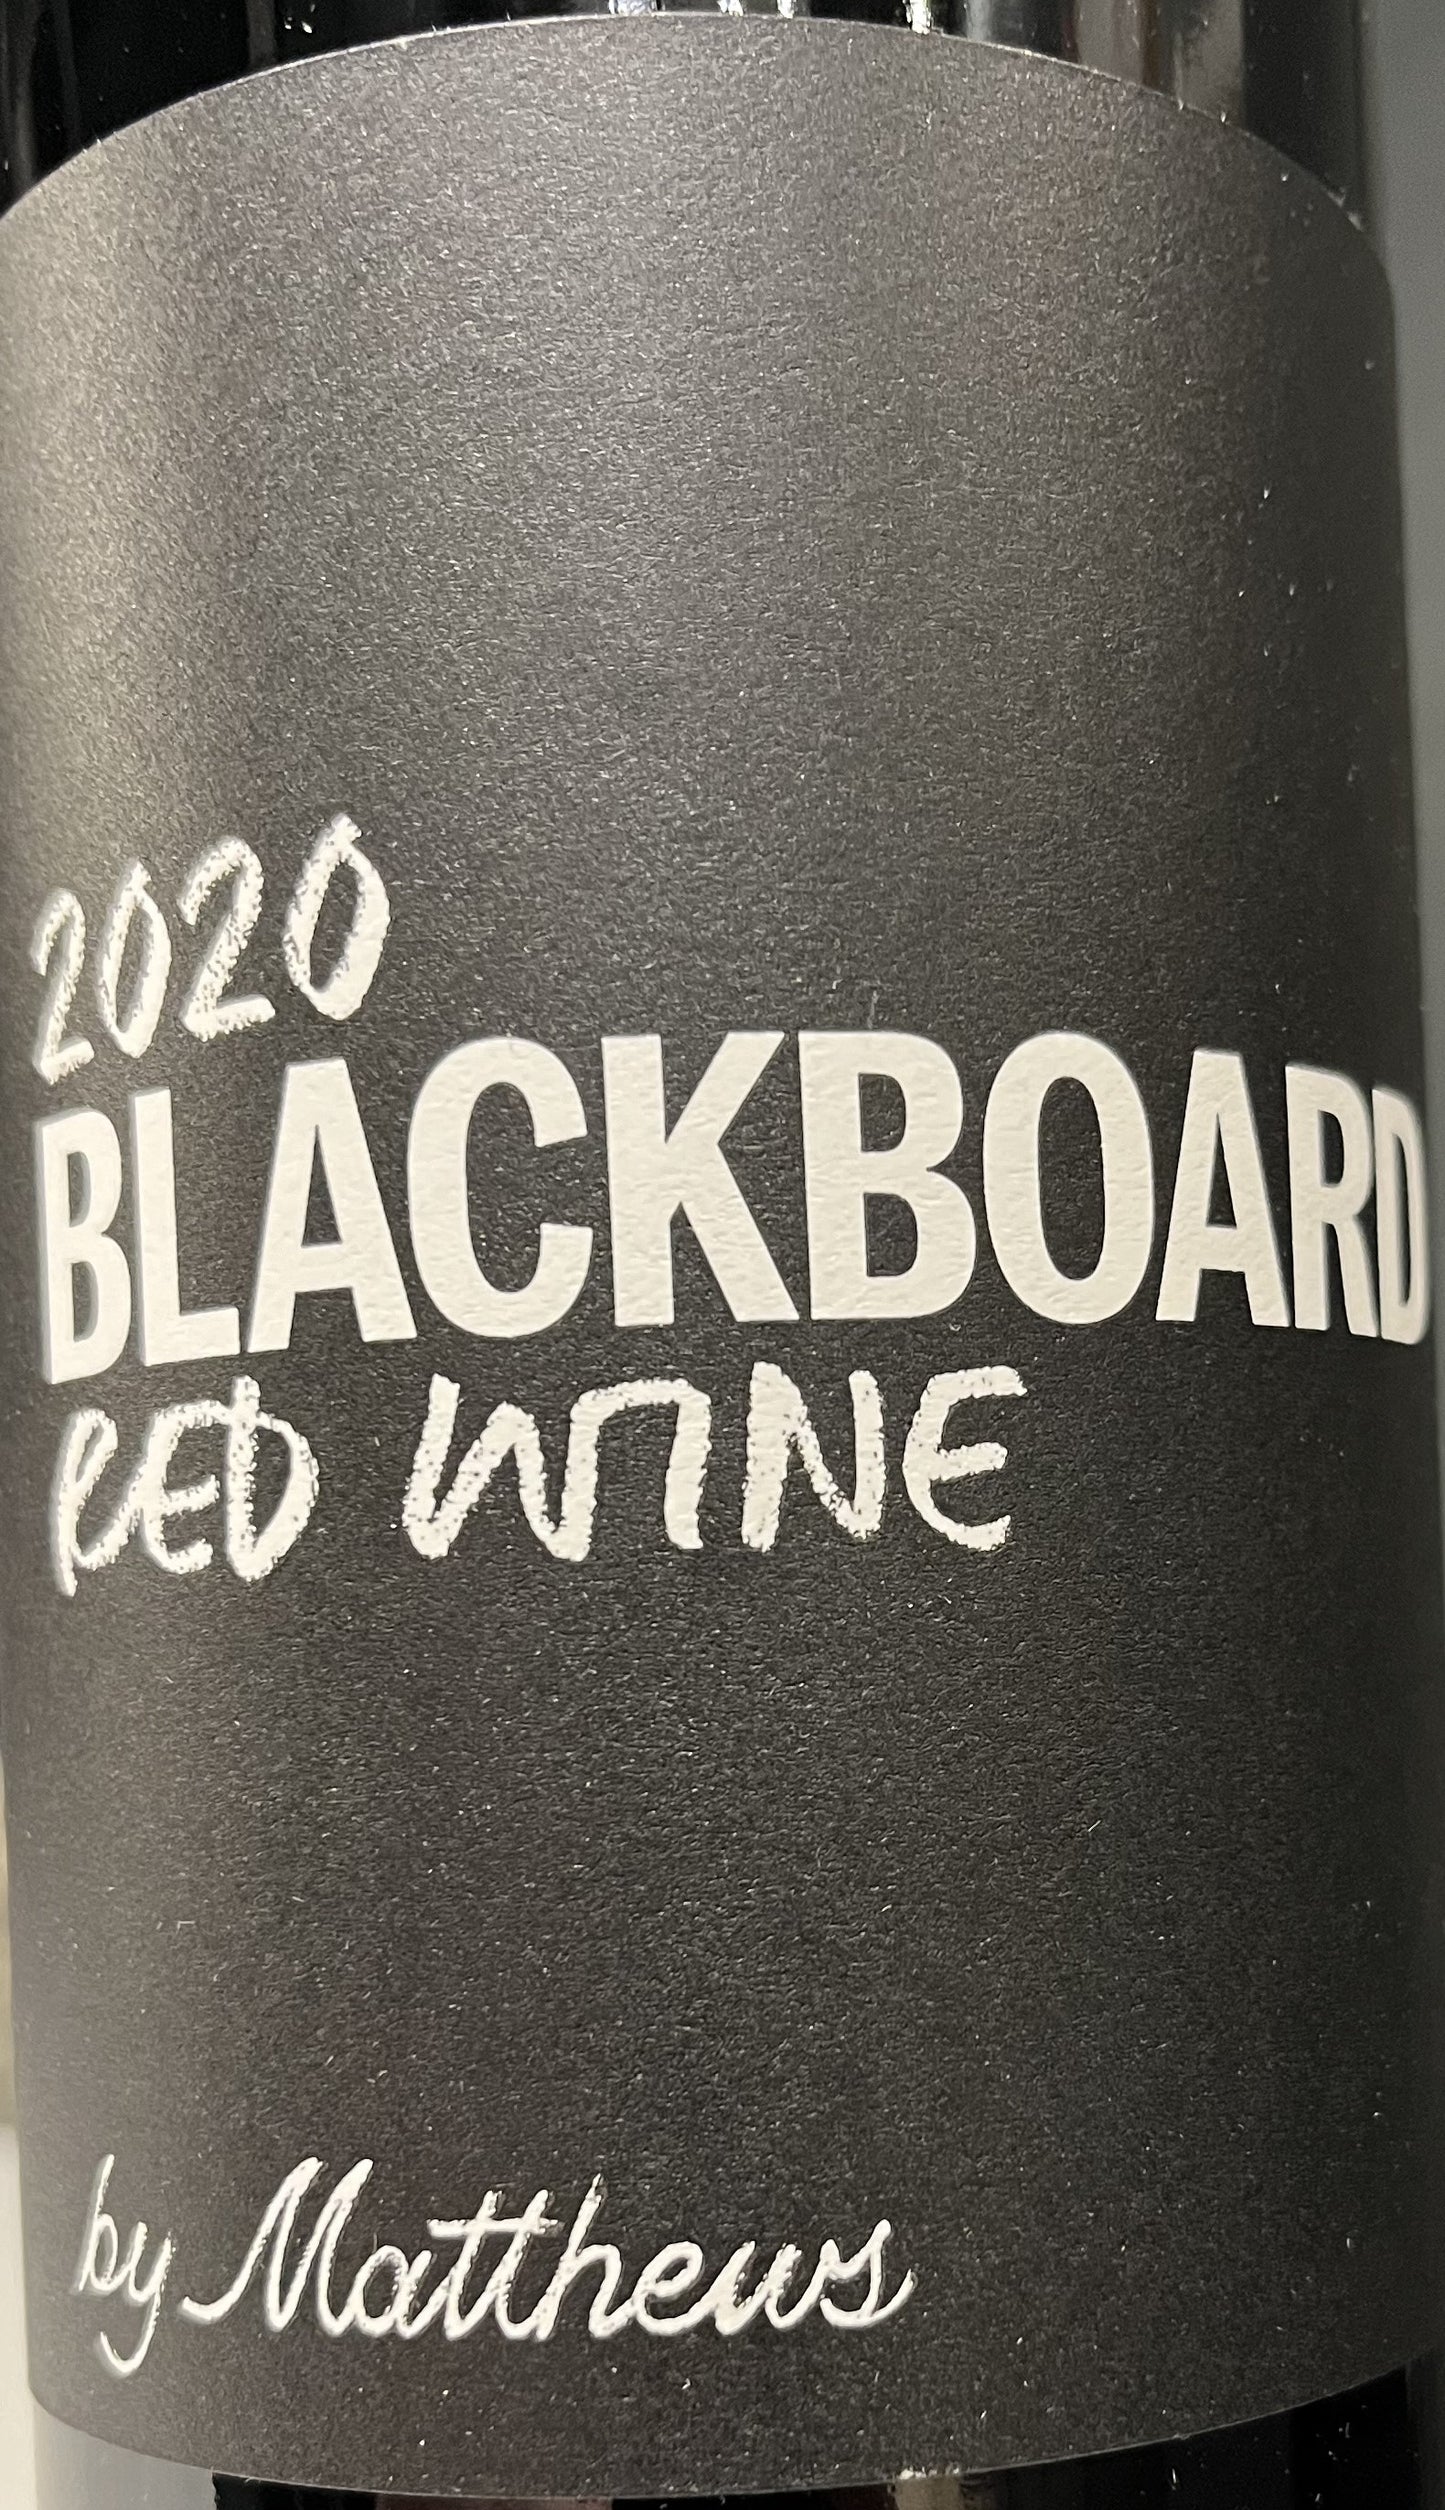 Matthew's "Blackboard" - Red Blend